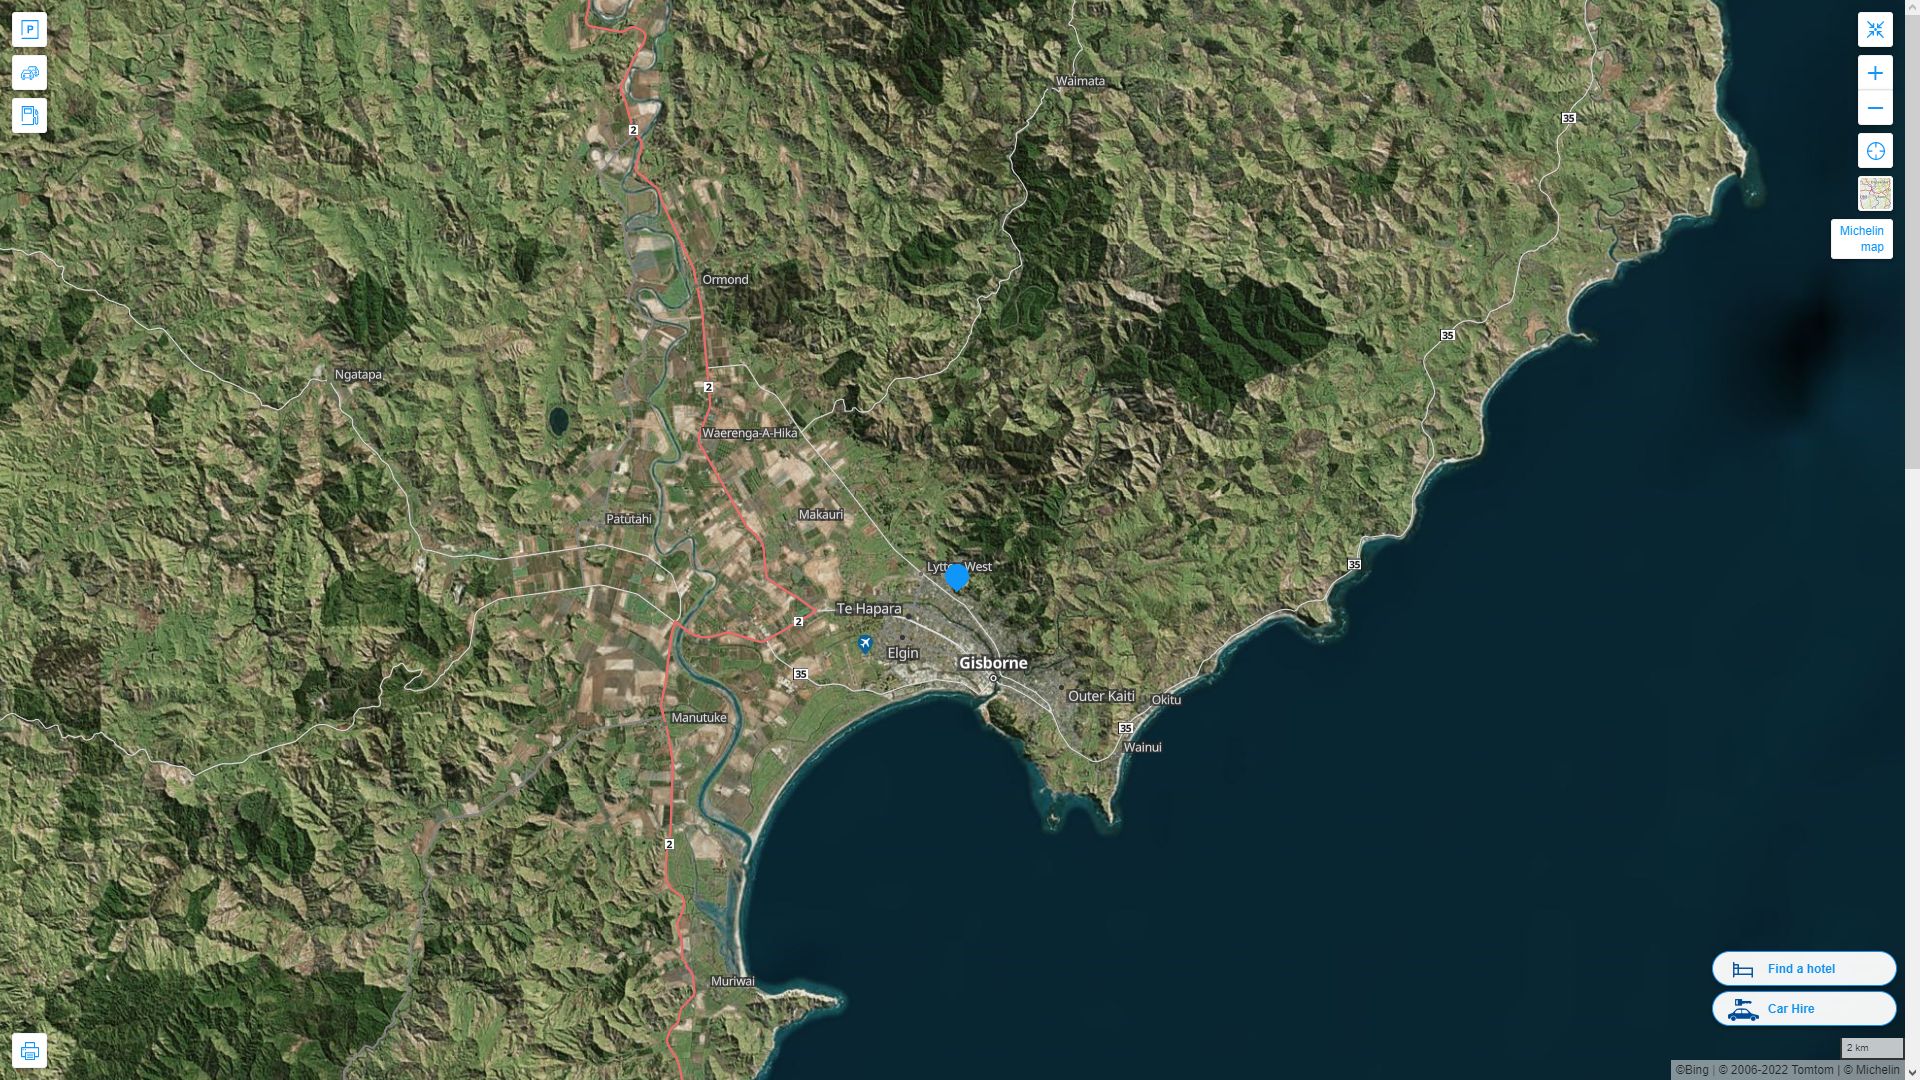 Gisborne Nouvelle Zelande Autoroute et carte routiere avec vue satellite